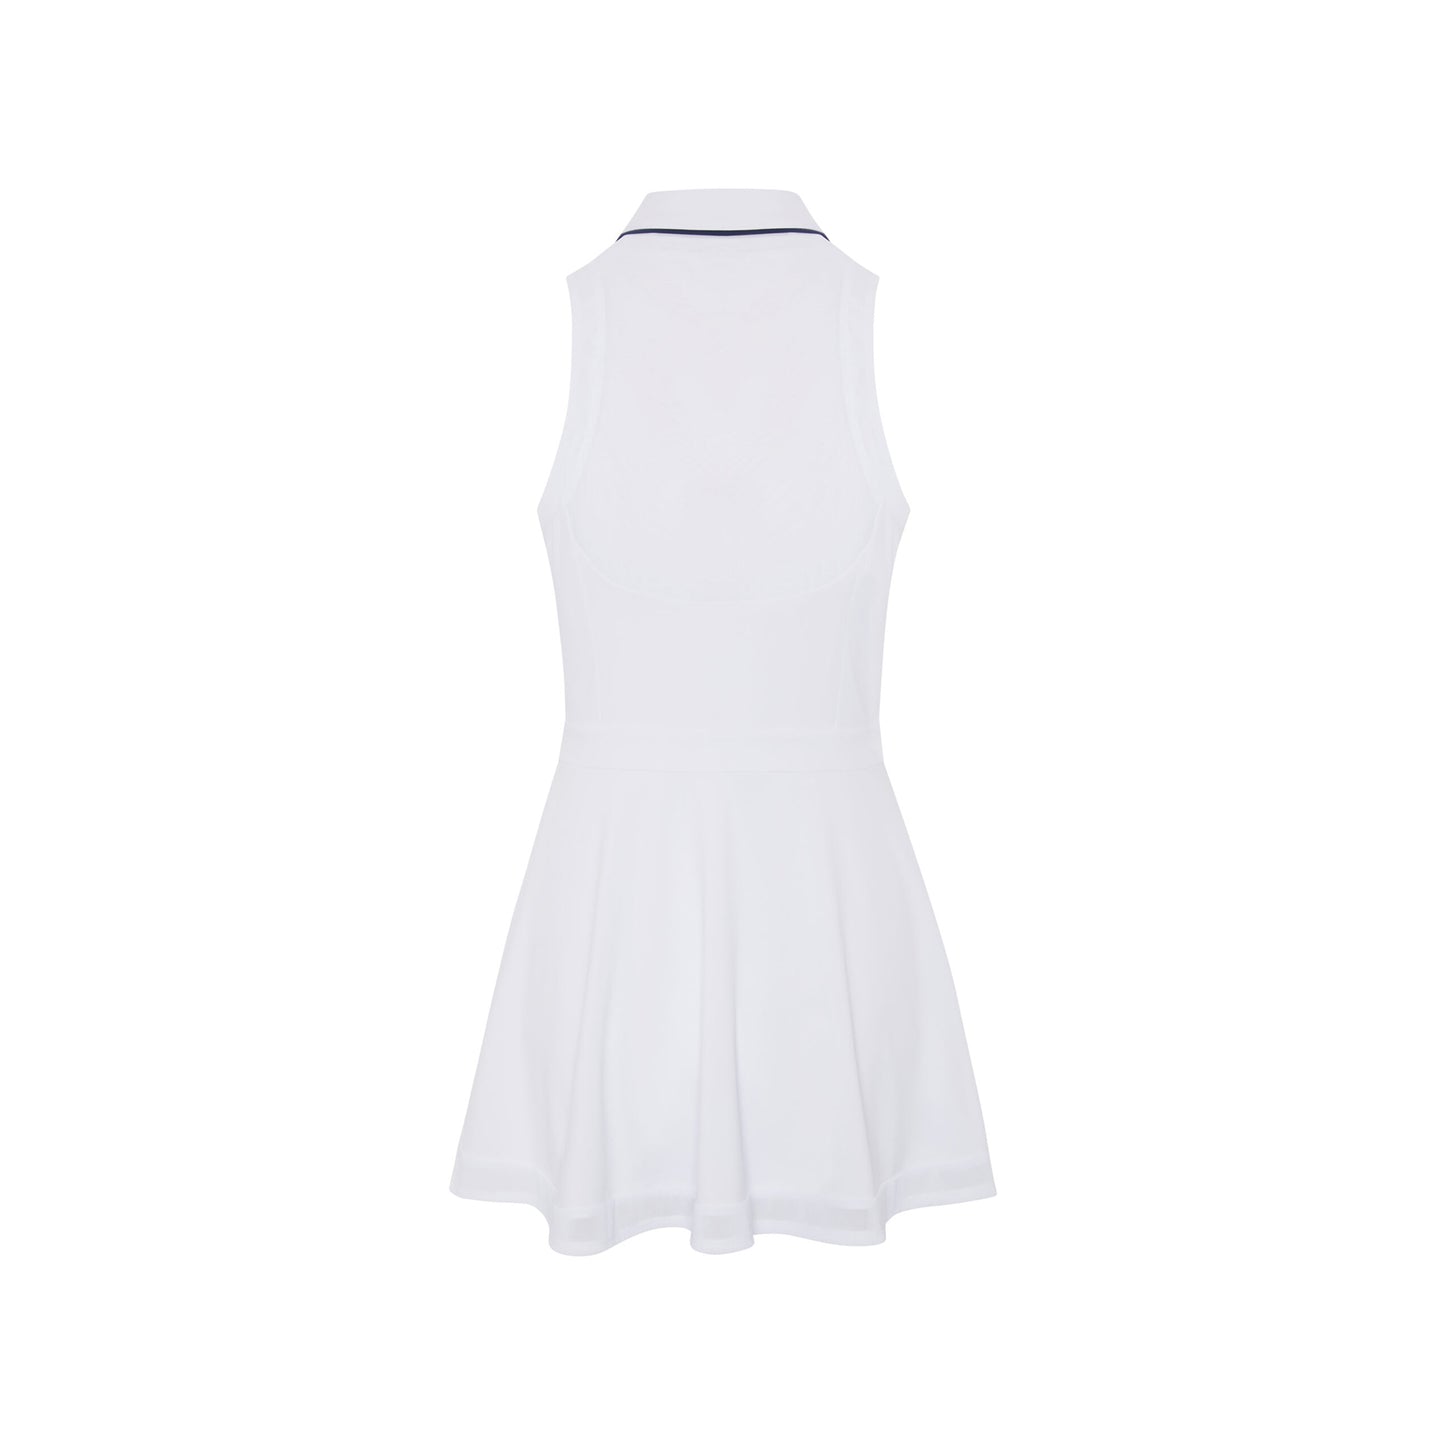 Original Penguin Women's Bright White Sleeveless Dress with Mesh Trim